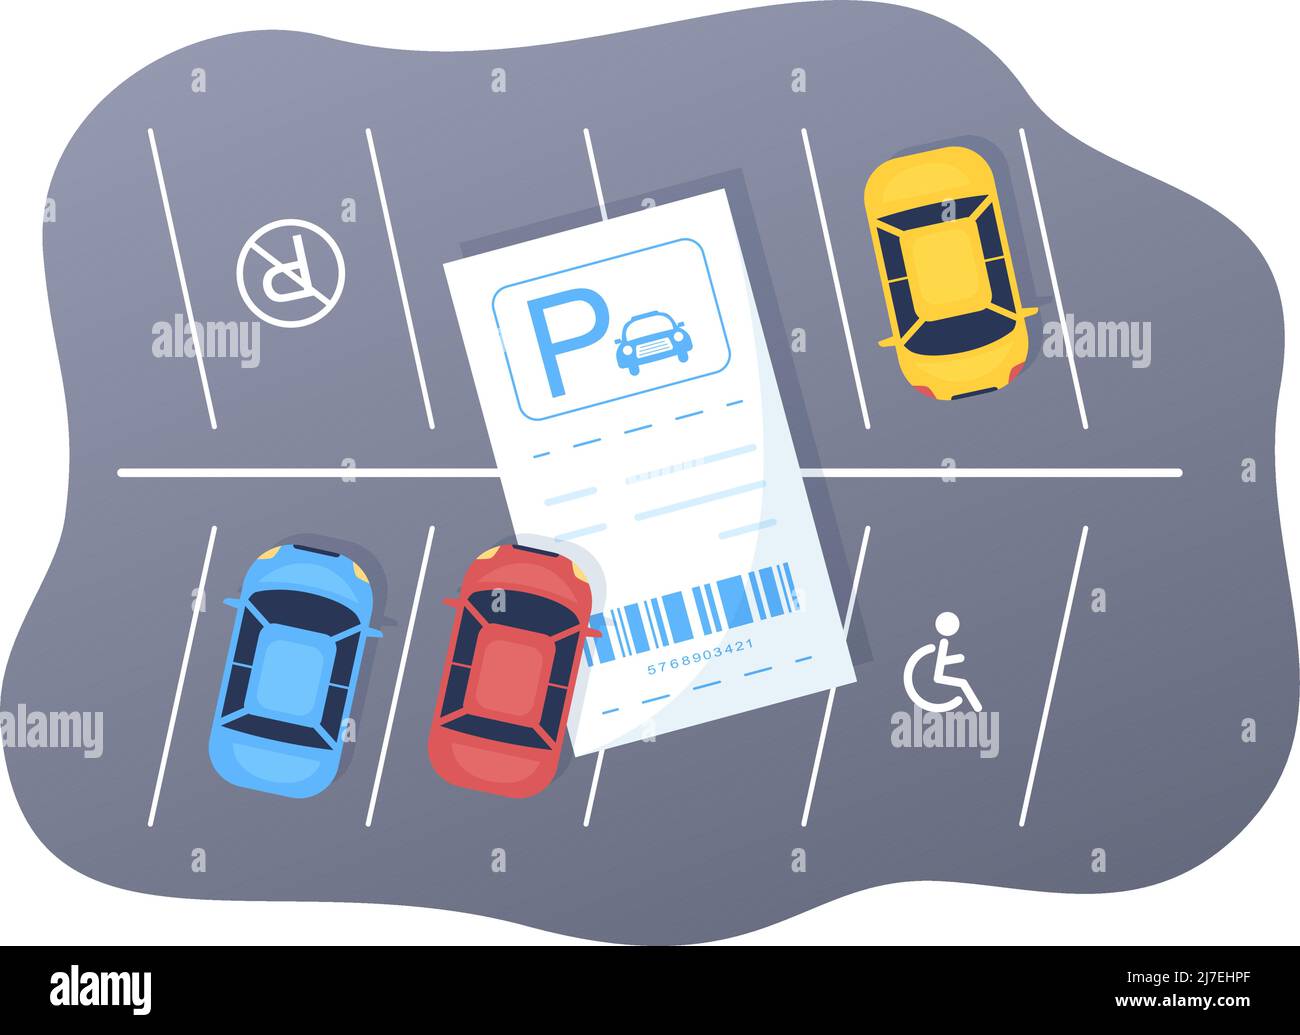 Parkservice mit Ticketbild und mehreren Autos auf öffentlichen Parkplätzen in flachem Hintergrund Cartoon Illustration Stock Vektor